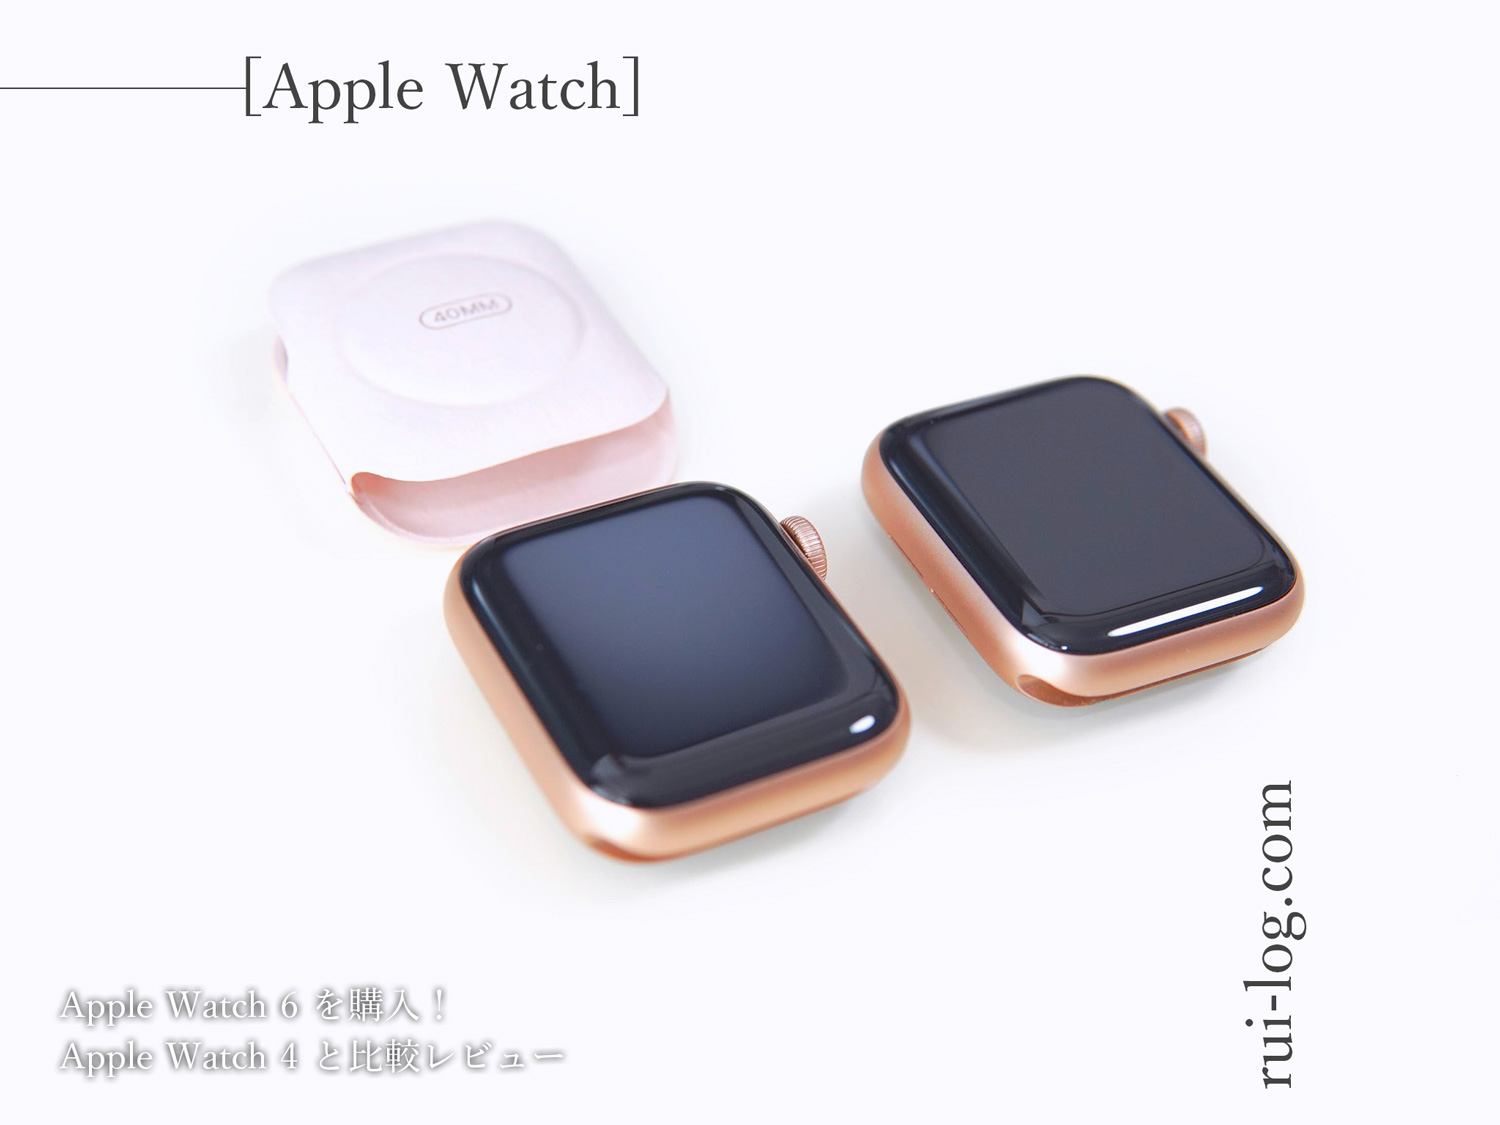 Apple Watch 6 レビュー。Apple Watch 4と比較してみた | ルイログ